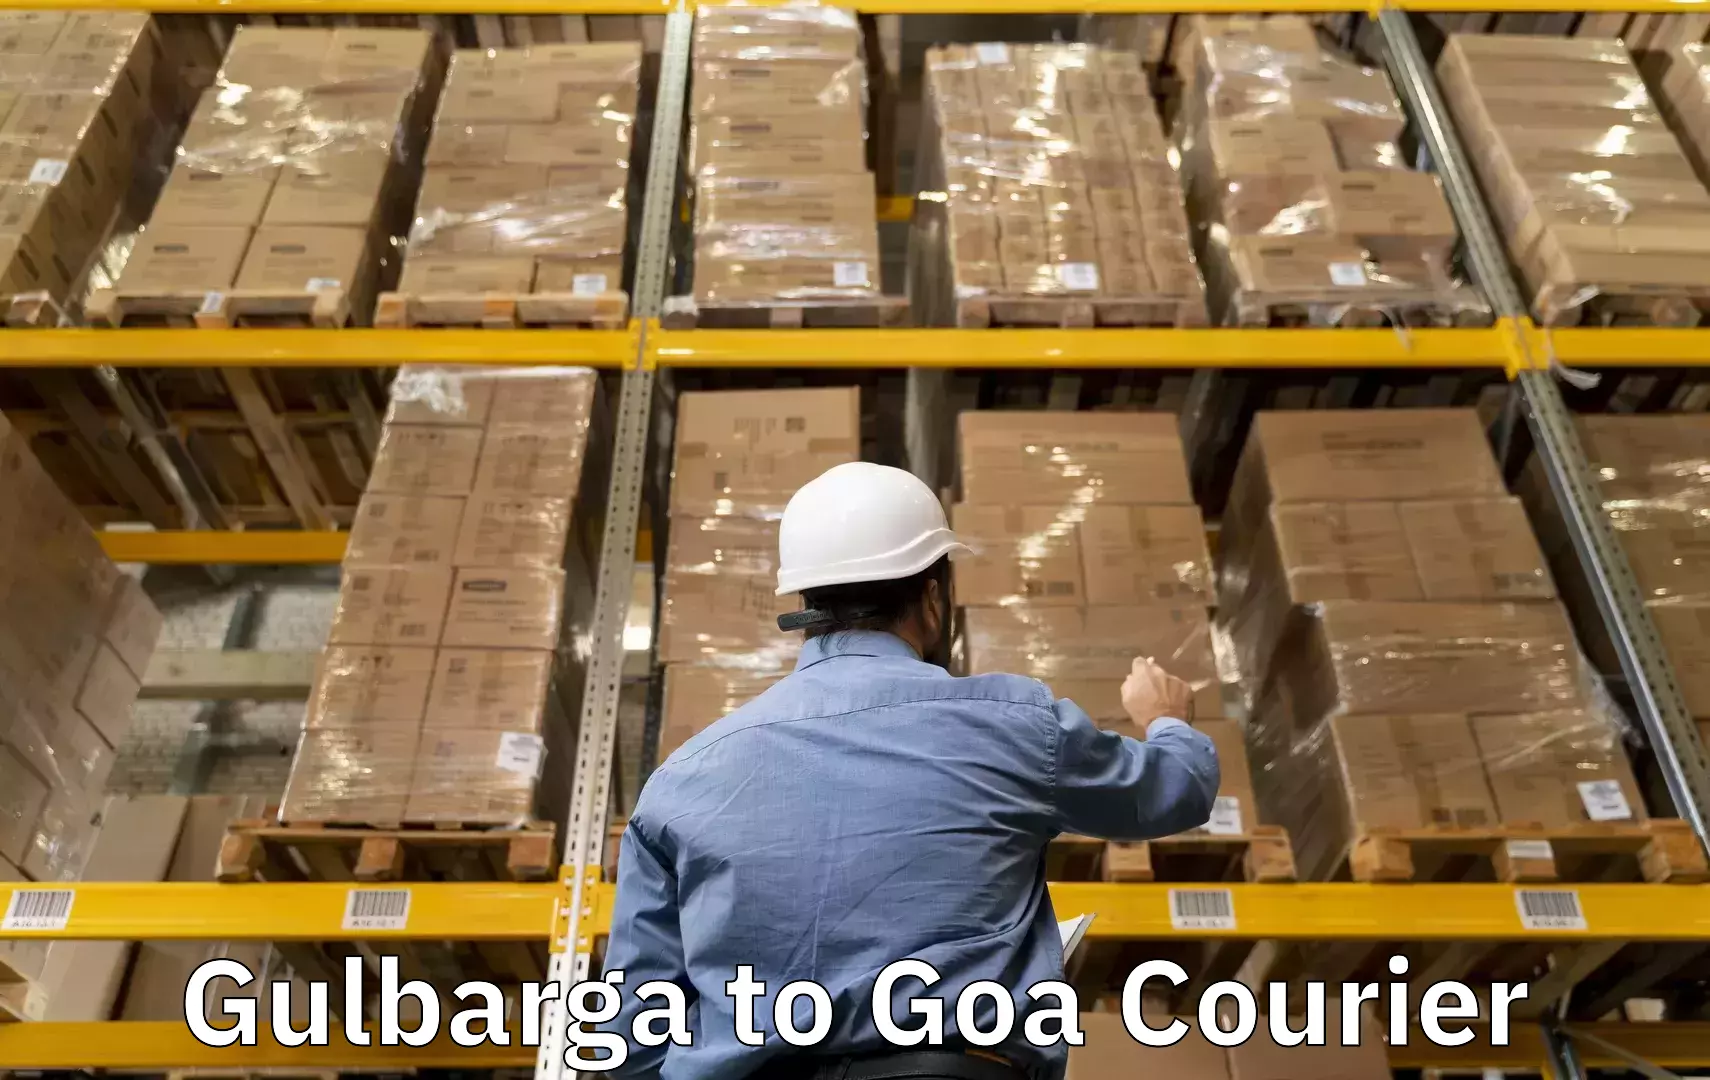 Baggage transport network Gulbarga to Panaji